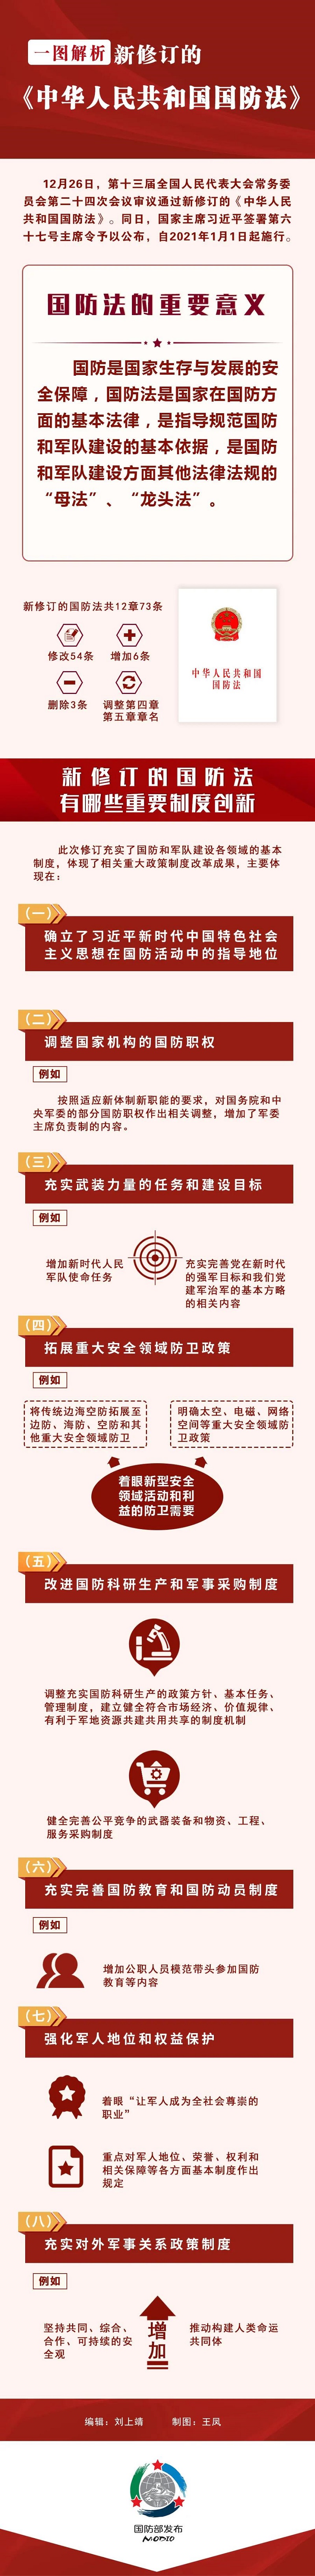 800宽一图解析新修订的《中华人民共和国国防法》.jpg